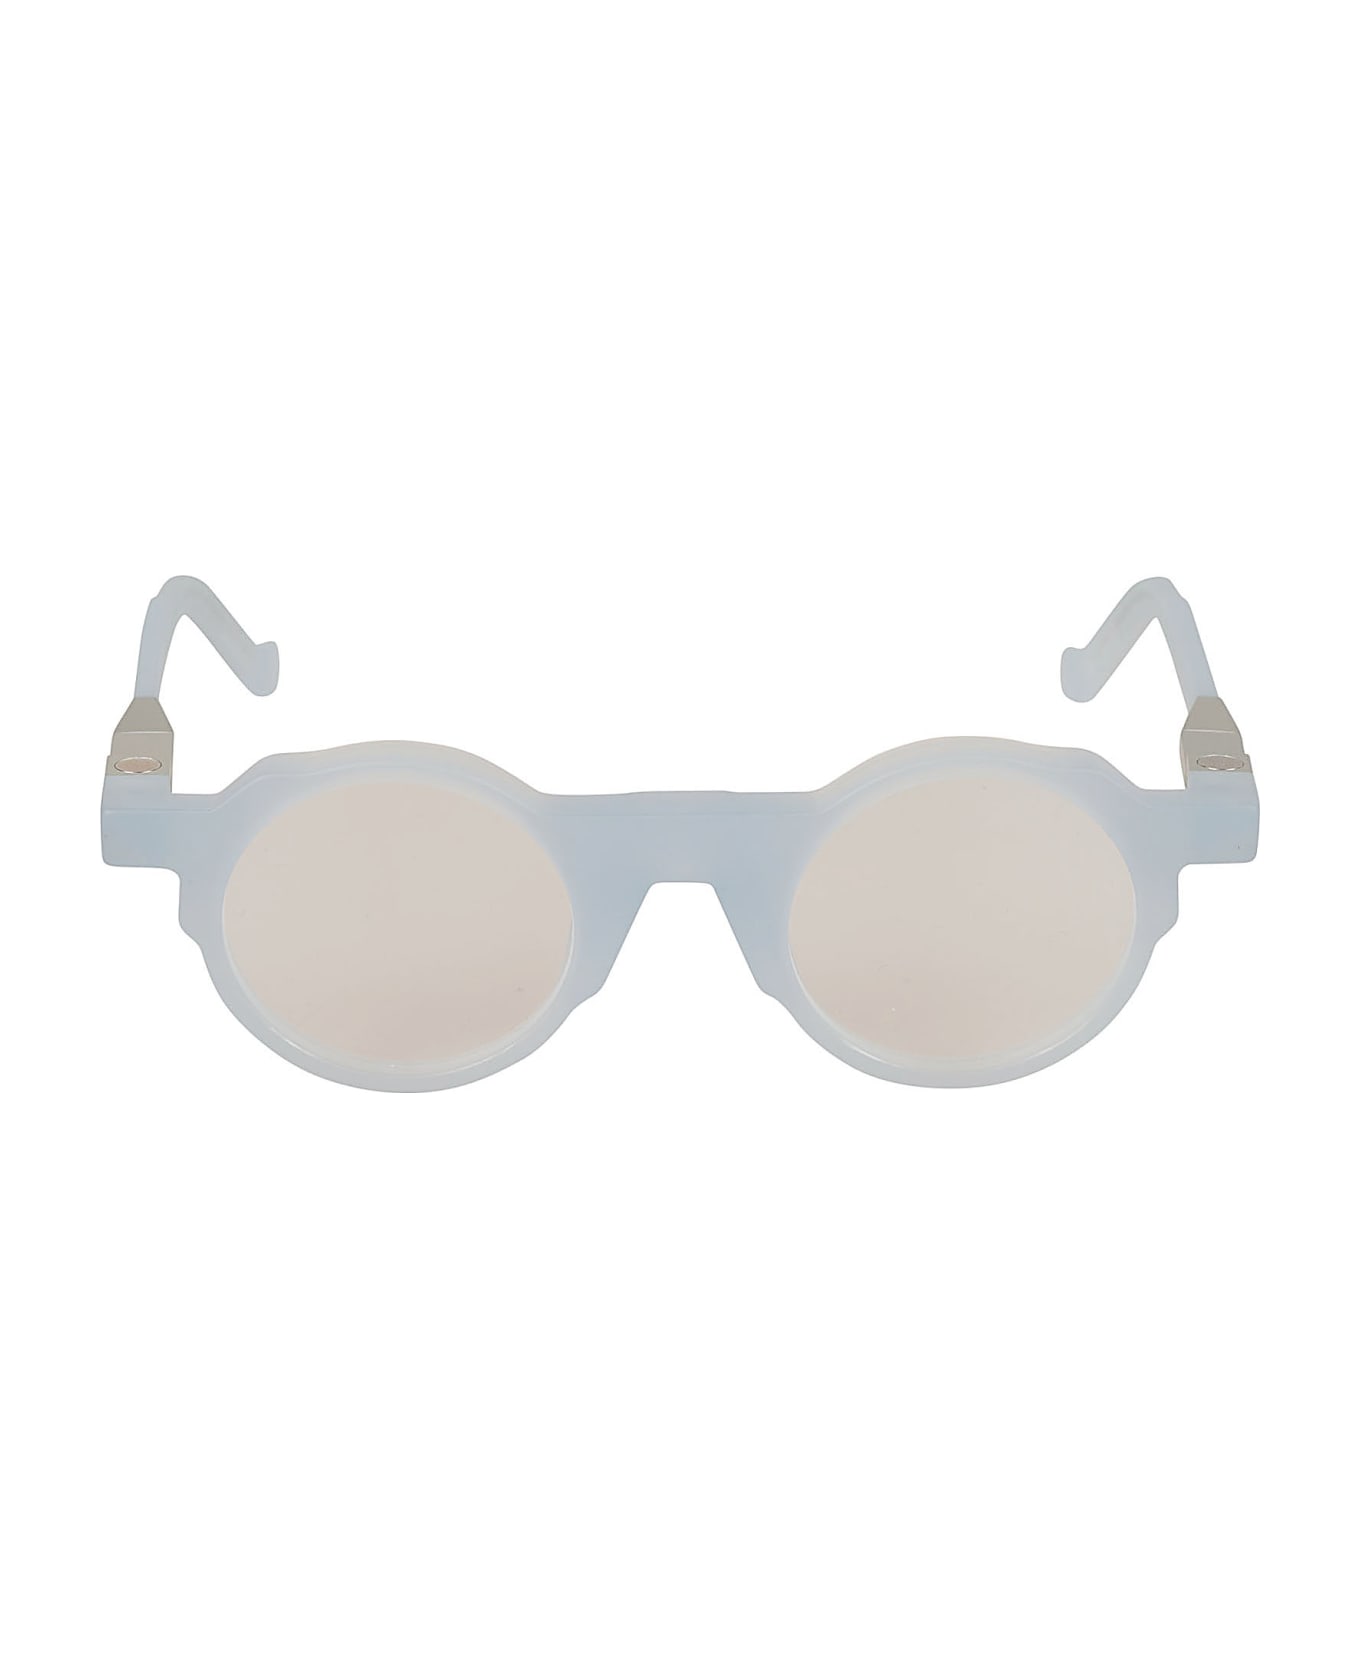 VAVA Round Frame Glasses Glasses - Aqua Haze アイウェア